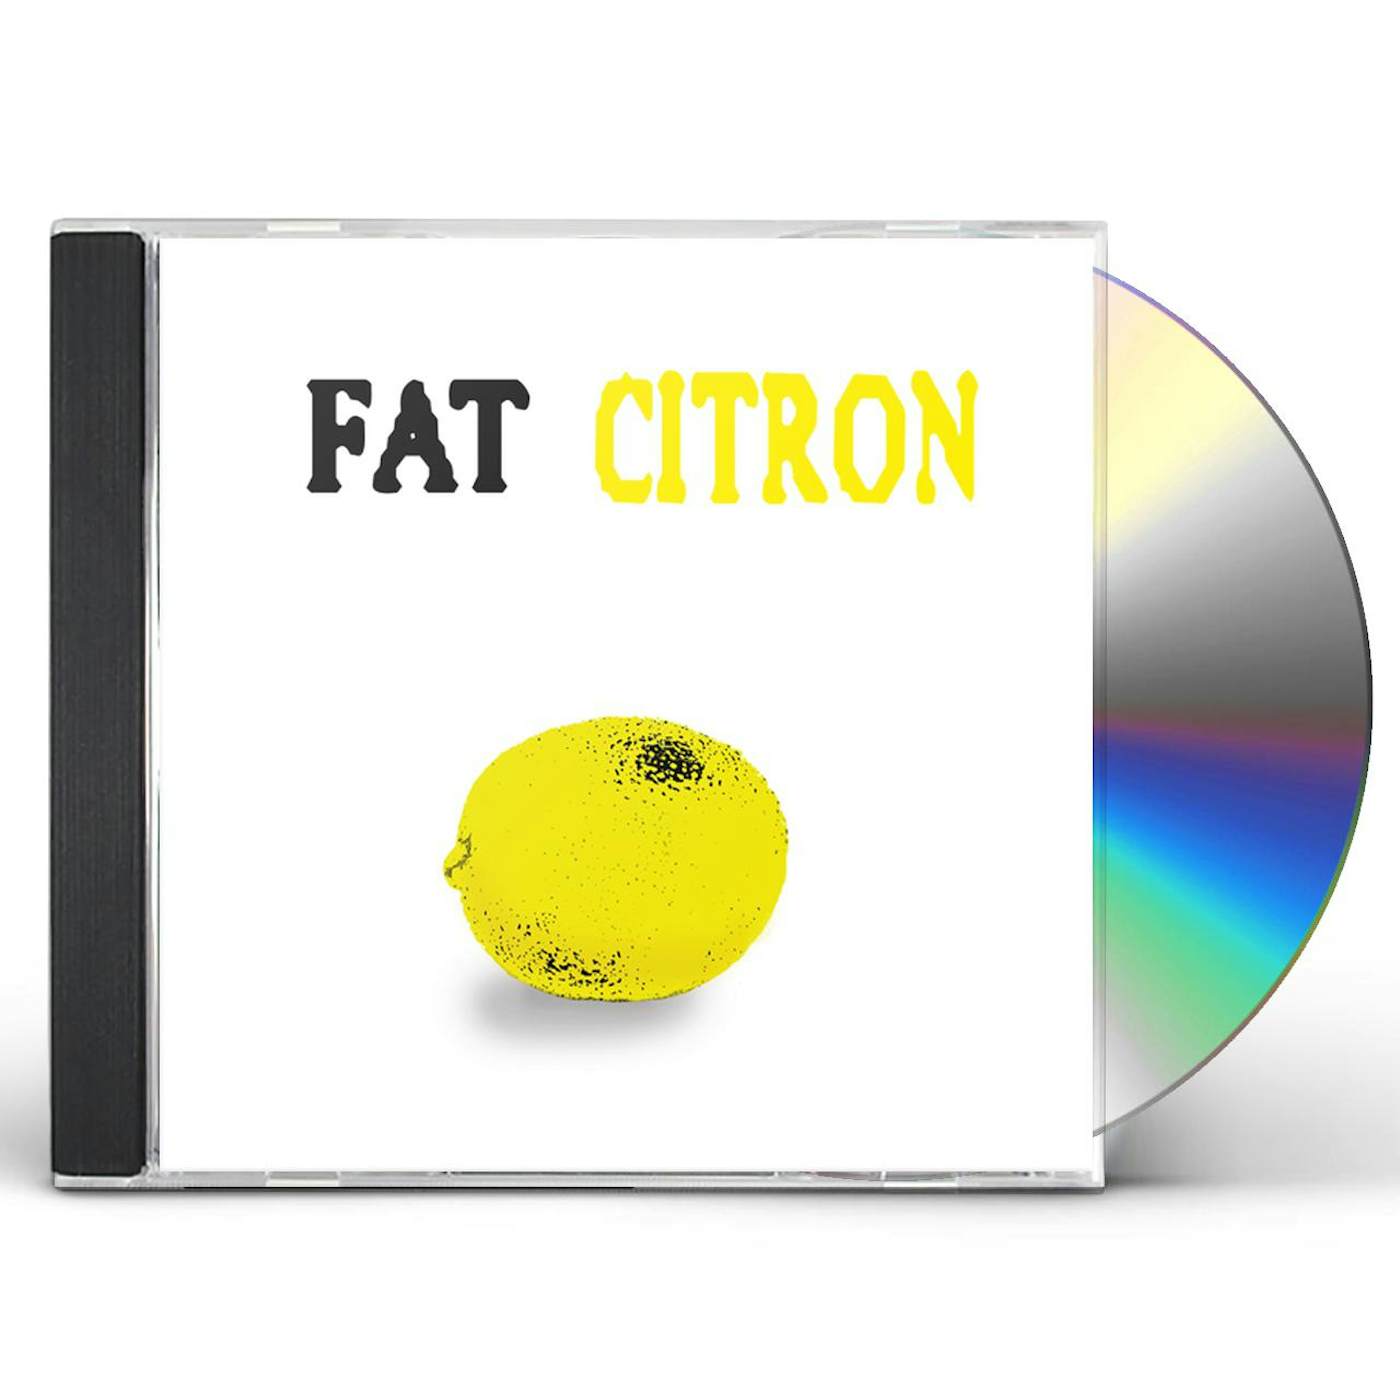 Fat CITRON CD